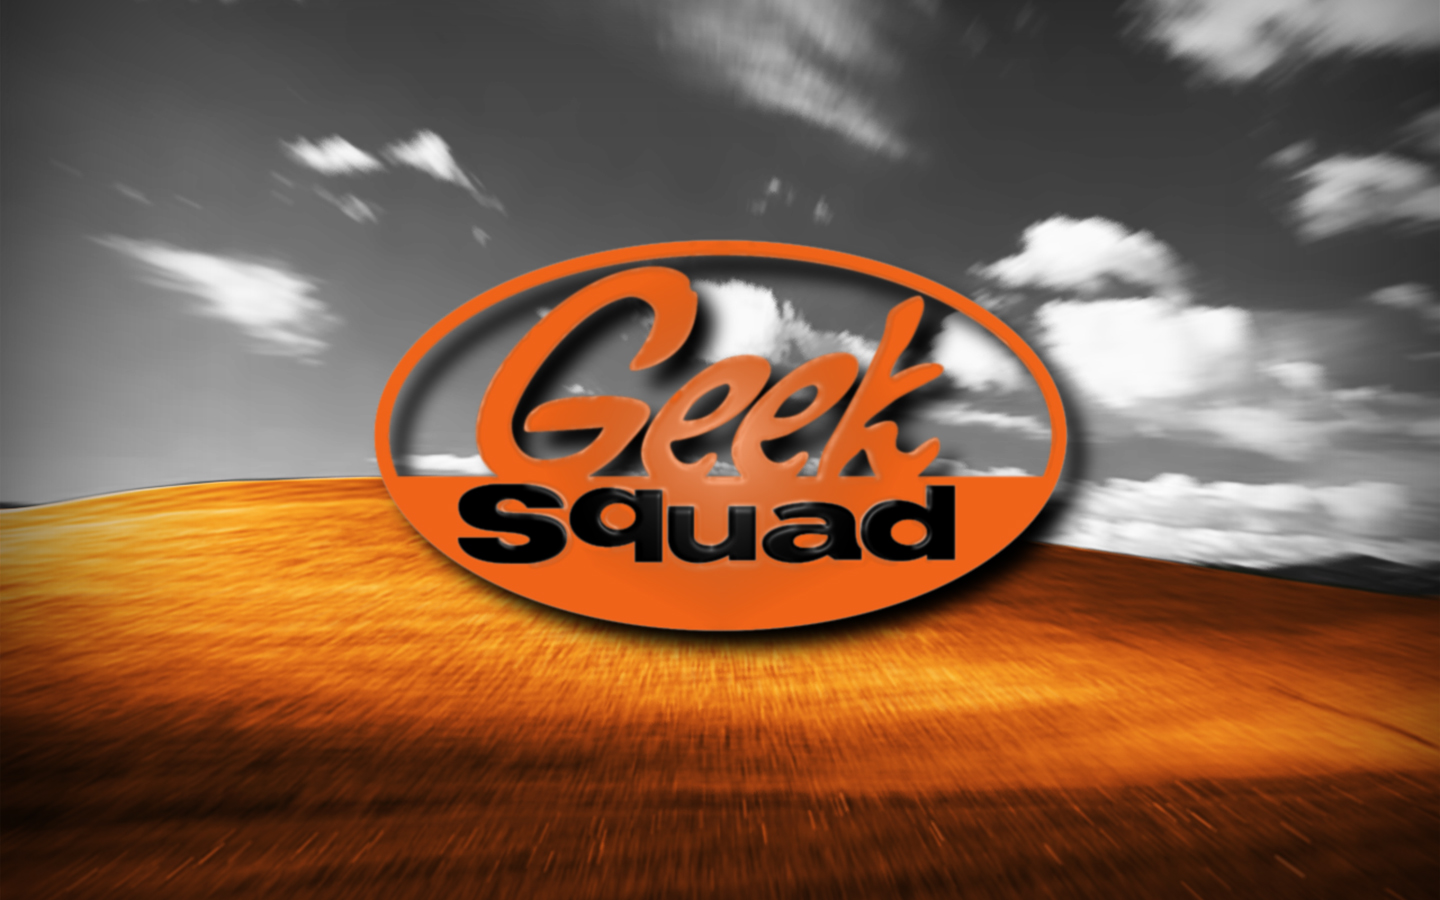 Geek squad wikipedia